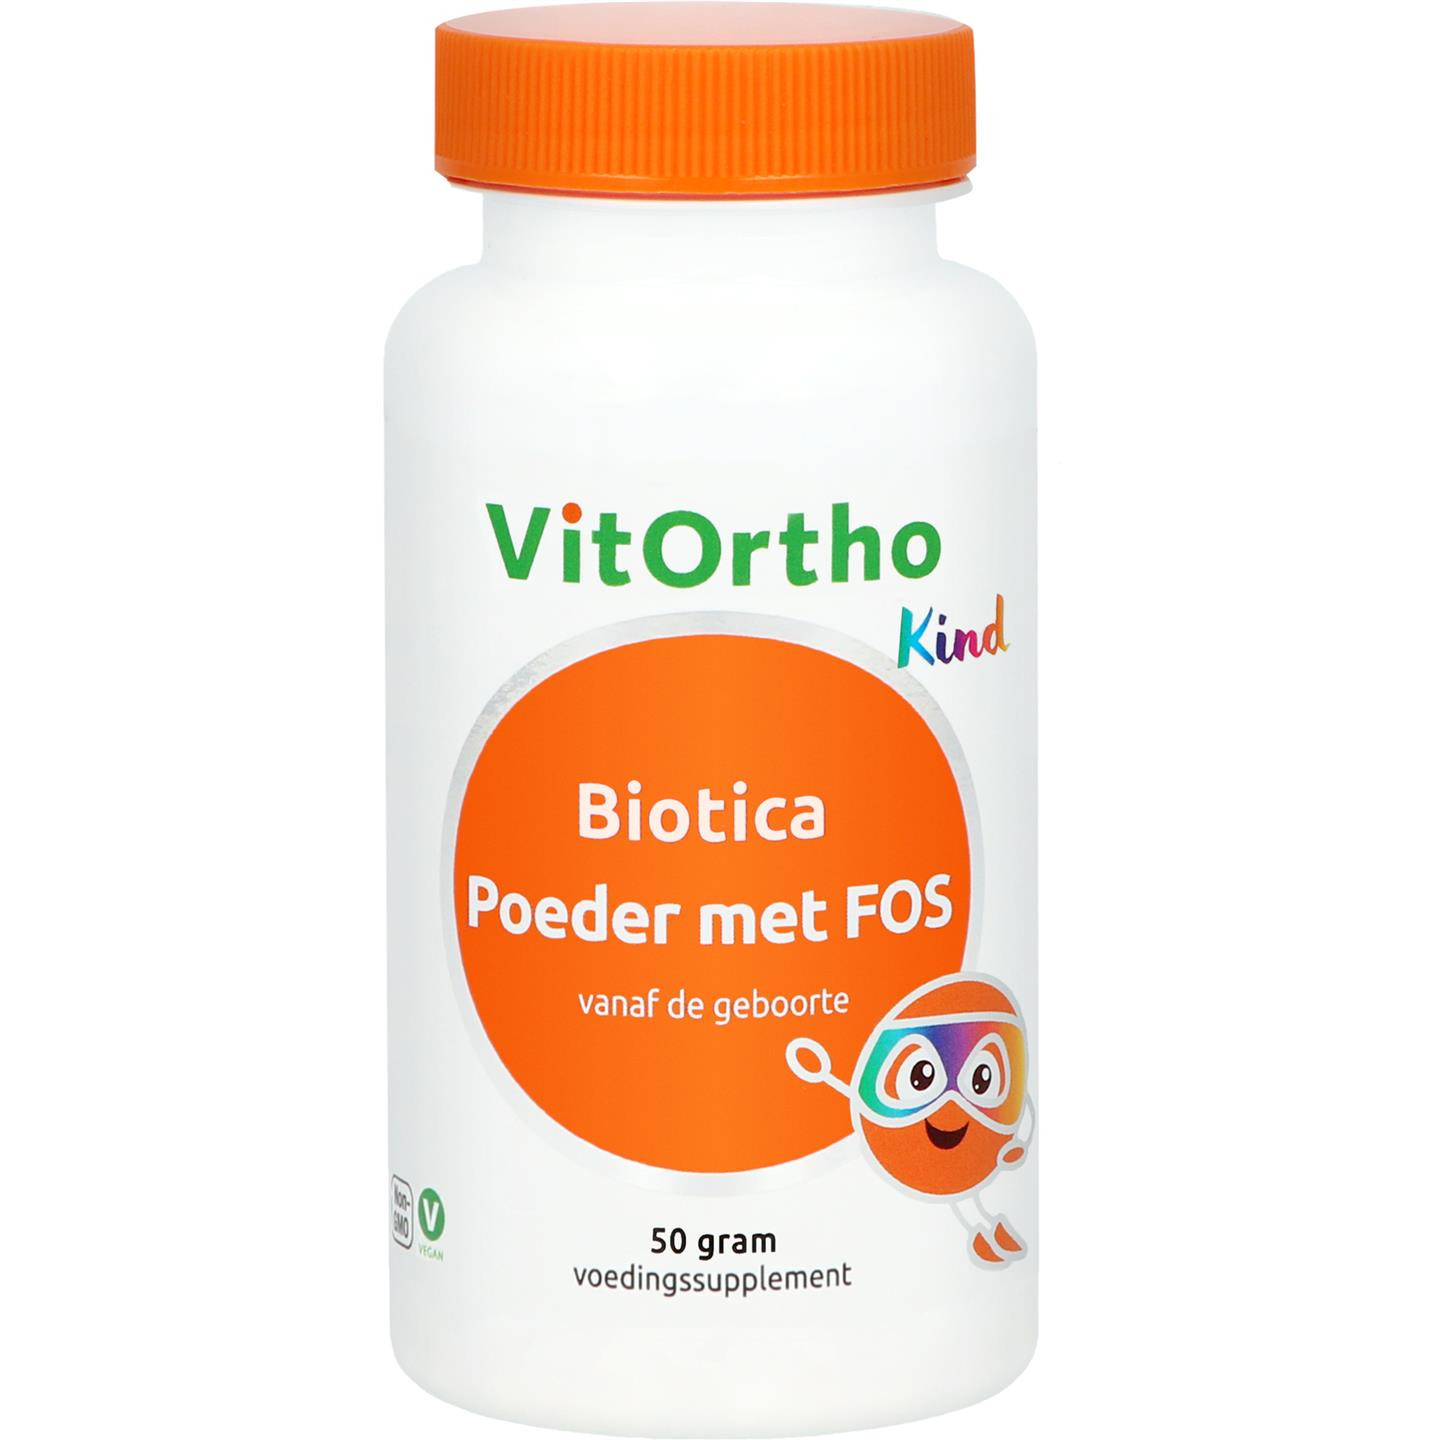 Biotica poeder met FOS Kind